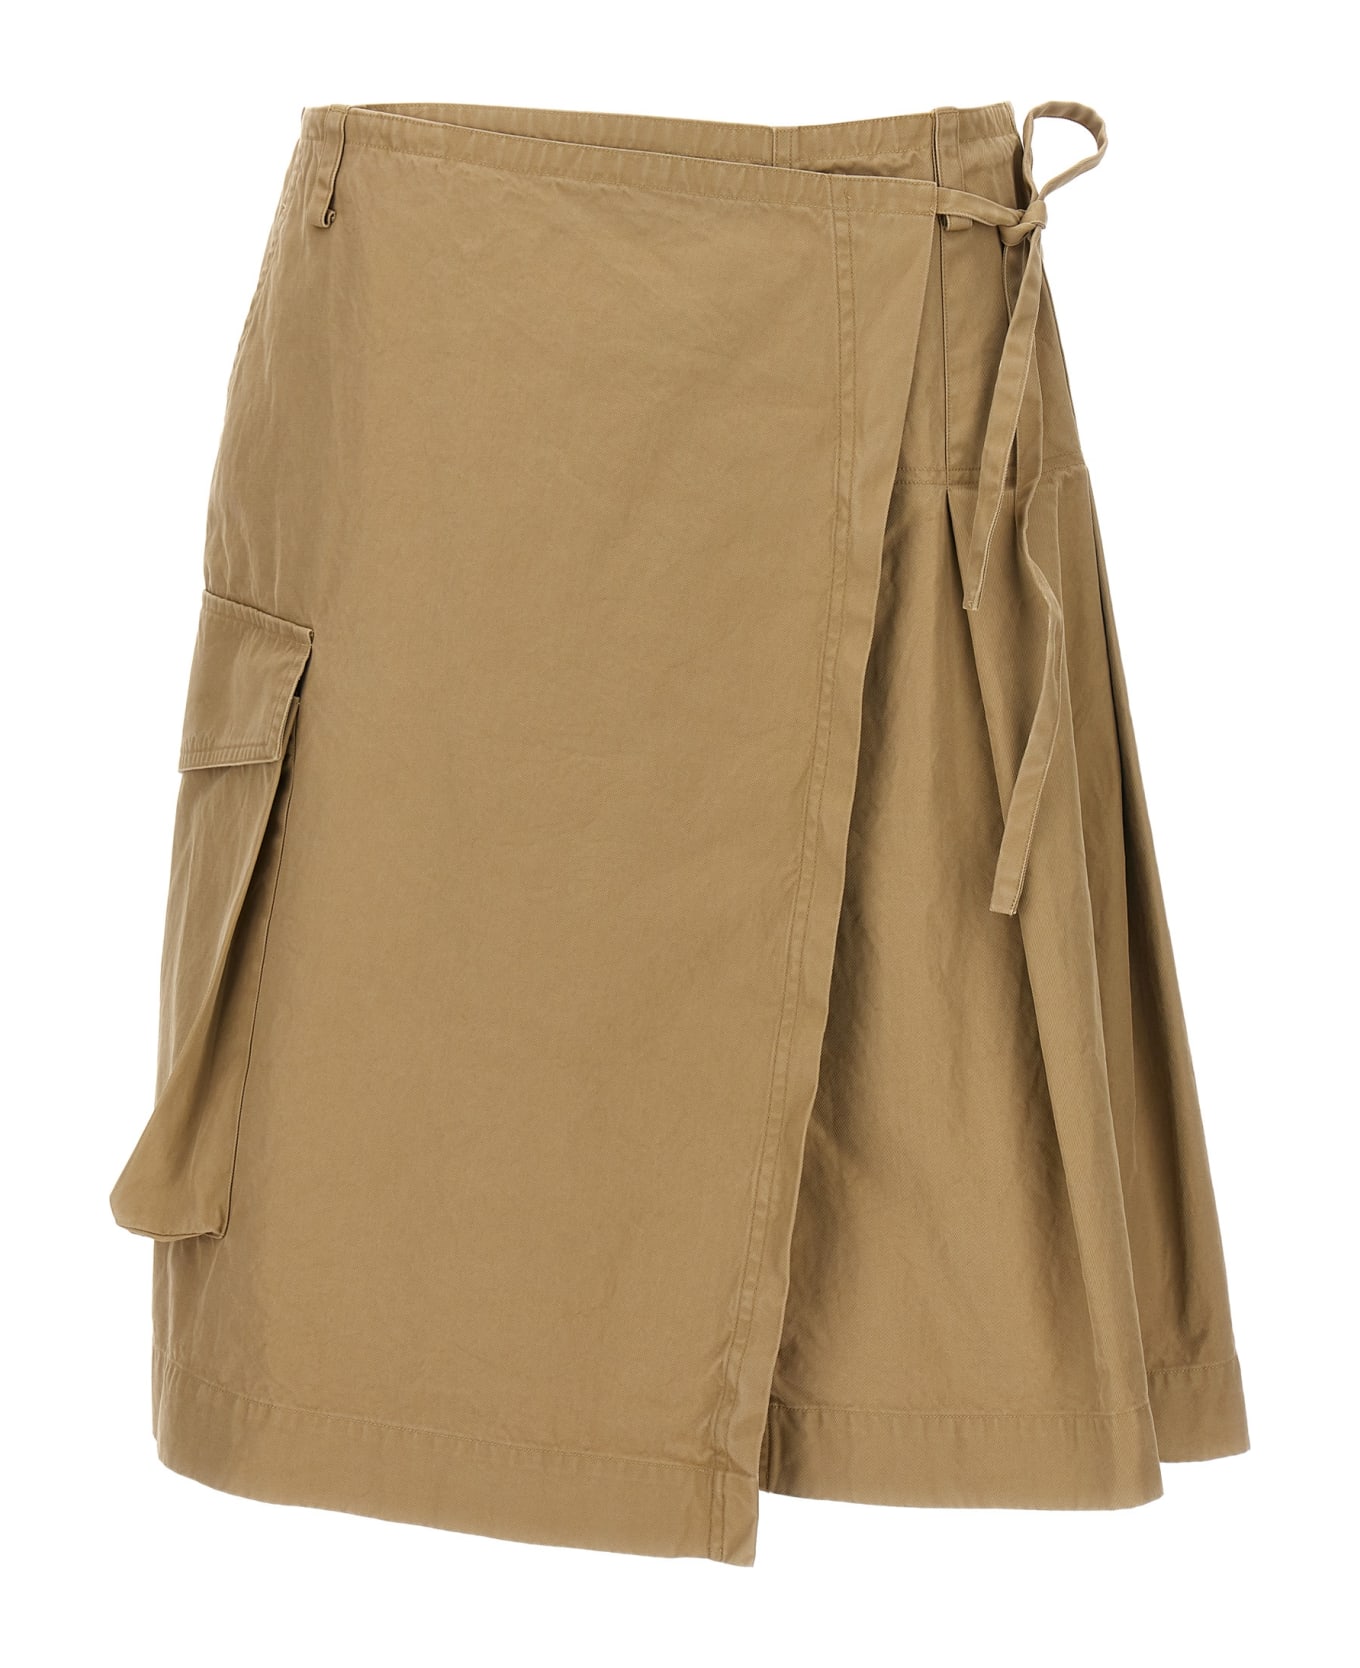 Dries Van Noten 'skilt' Skirt - Beige スカート